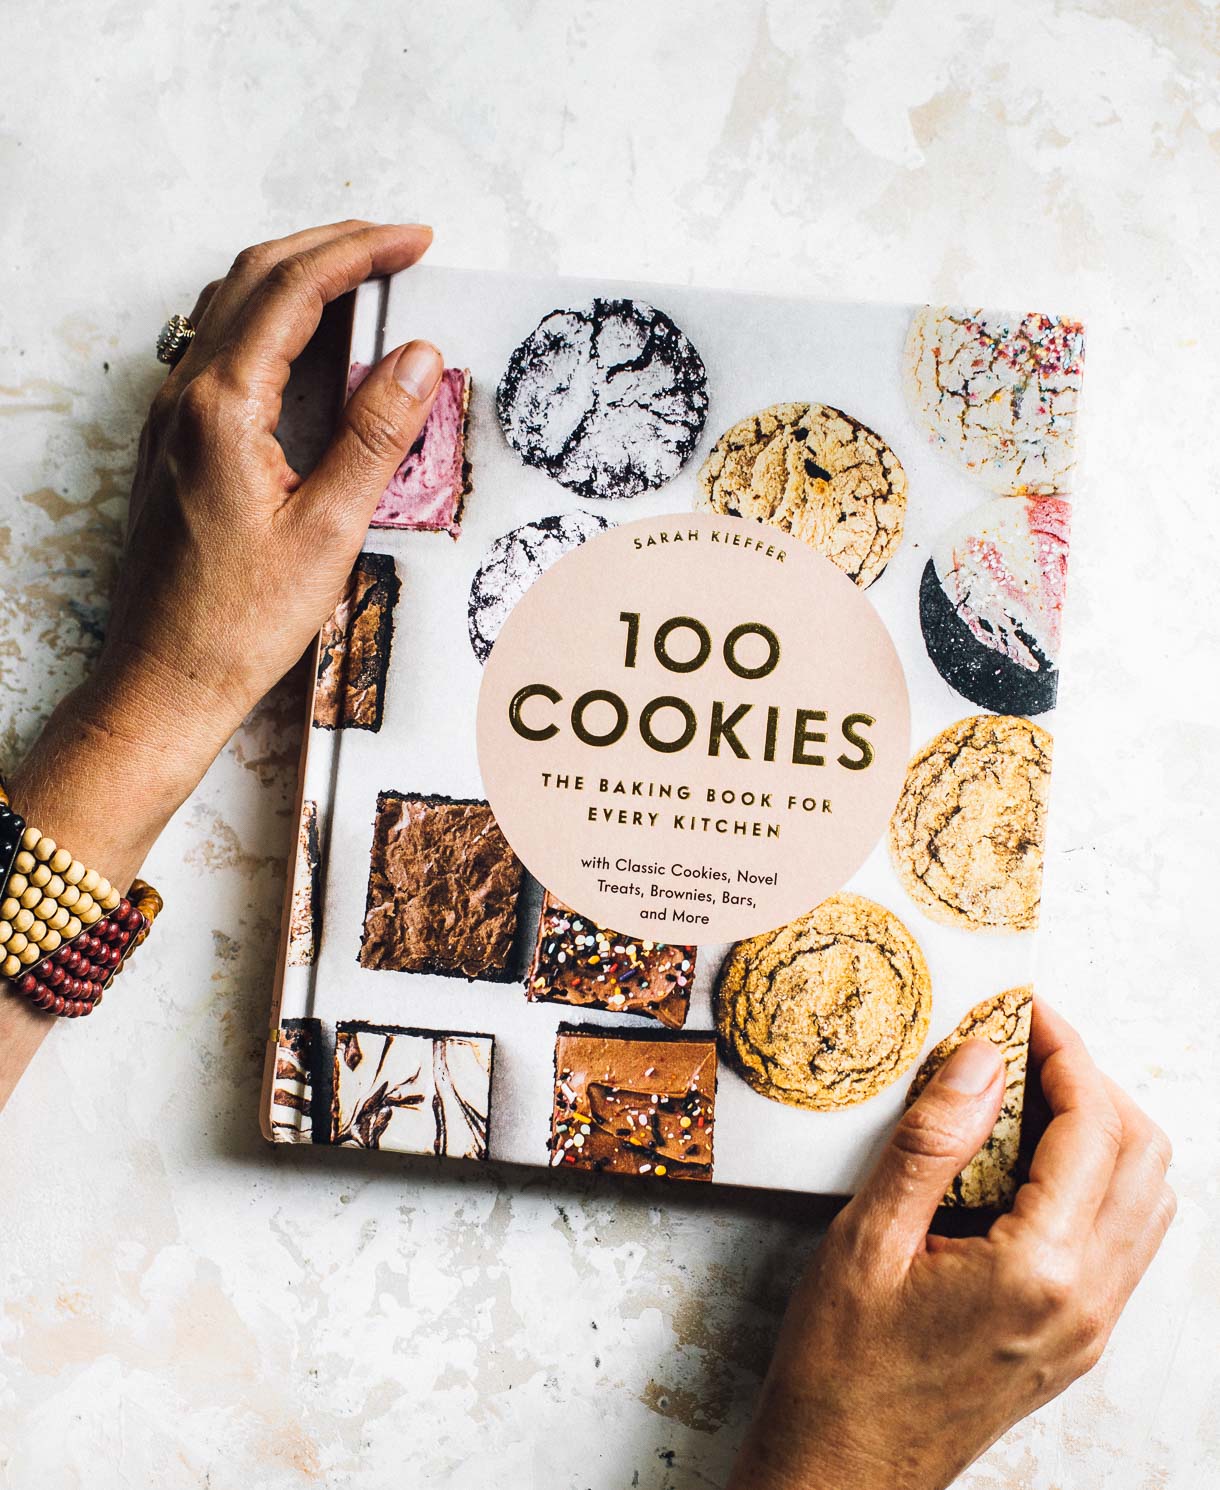 100 cookies cookbook by Sarah Kieffer